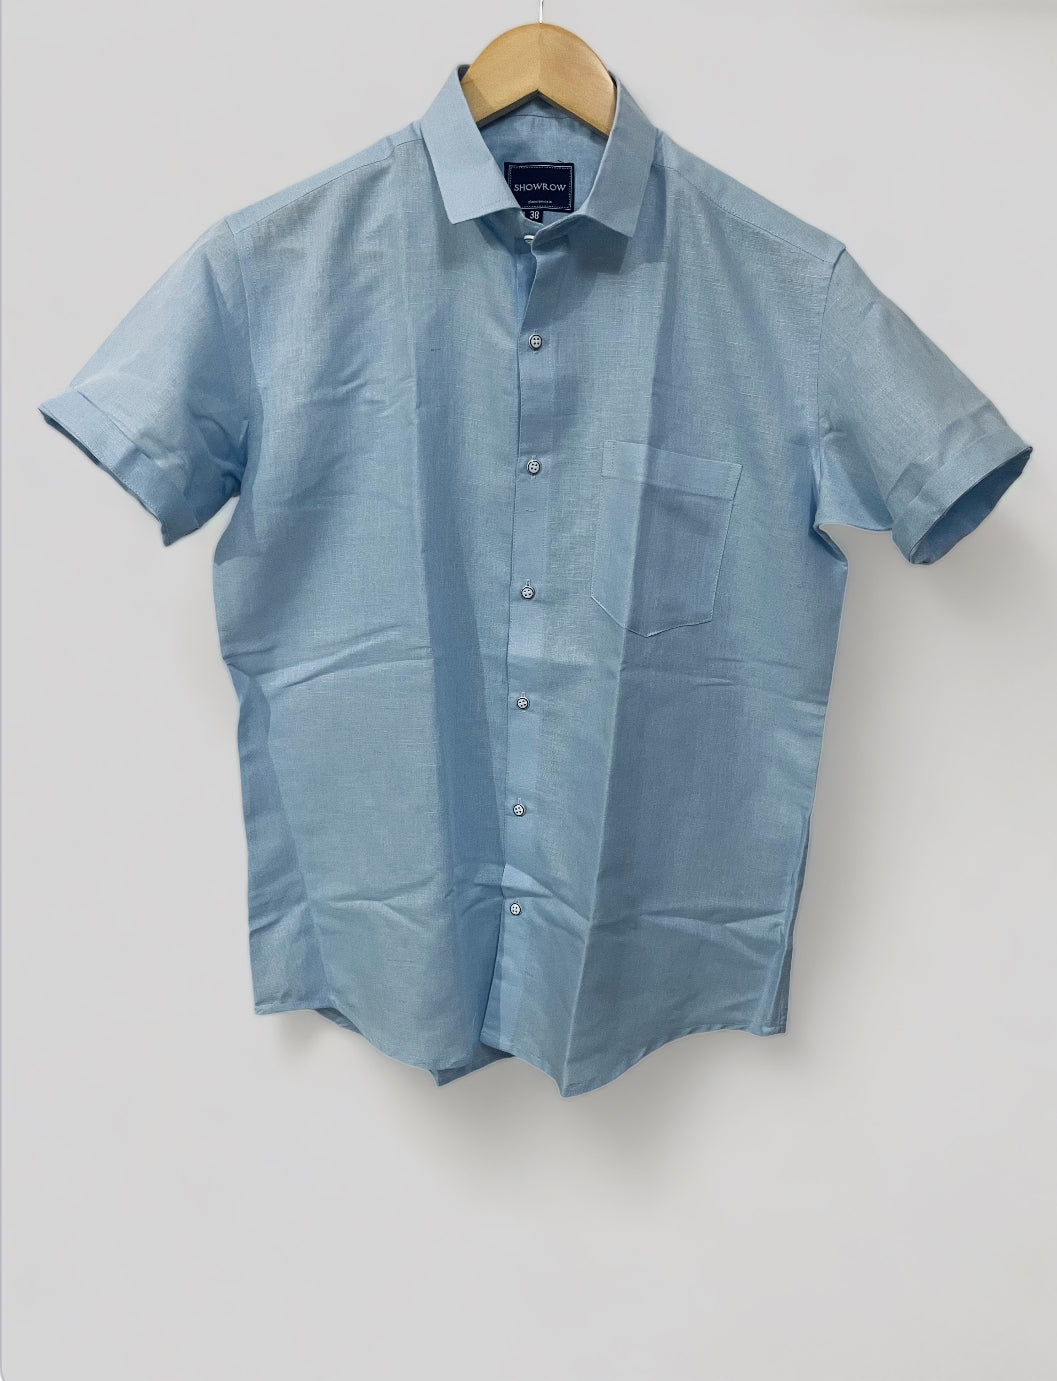 Linen- Sky Blue half sleeves shirt